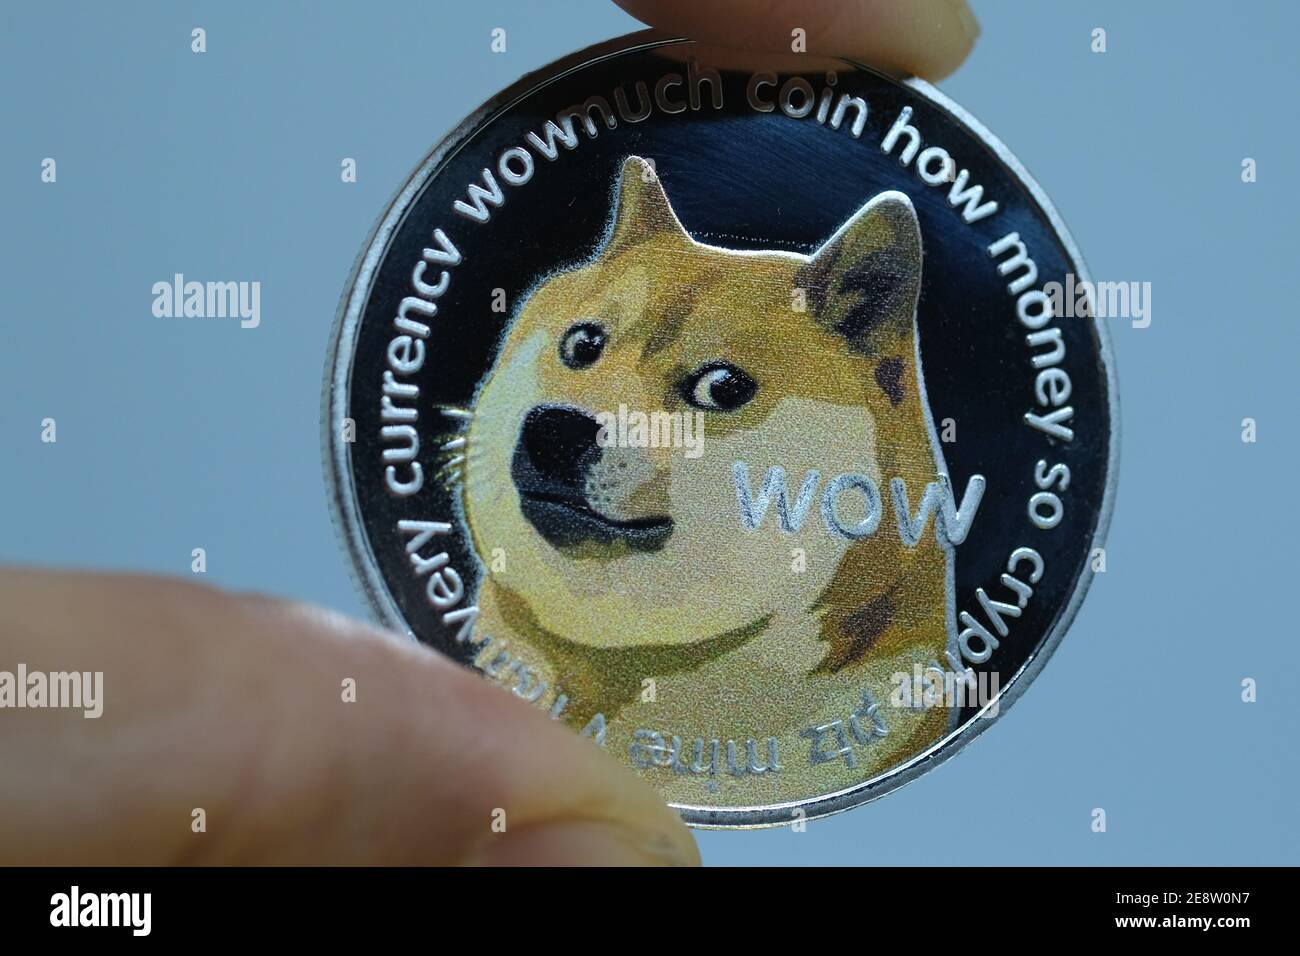 Dans cette illustration, une représentation visuelle de la crypto-monnaie numérique, Dogecoin, est exposée le 29 janvier 2021 à Katwijk, pays-Bas. (Photo de Yuriko Nakao/AFLO) Banque D'Images